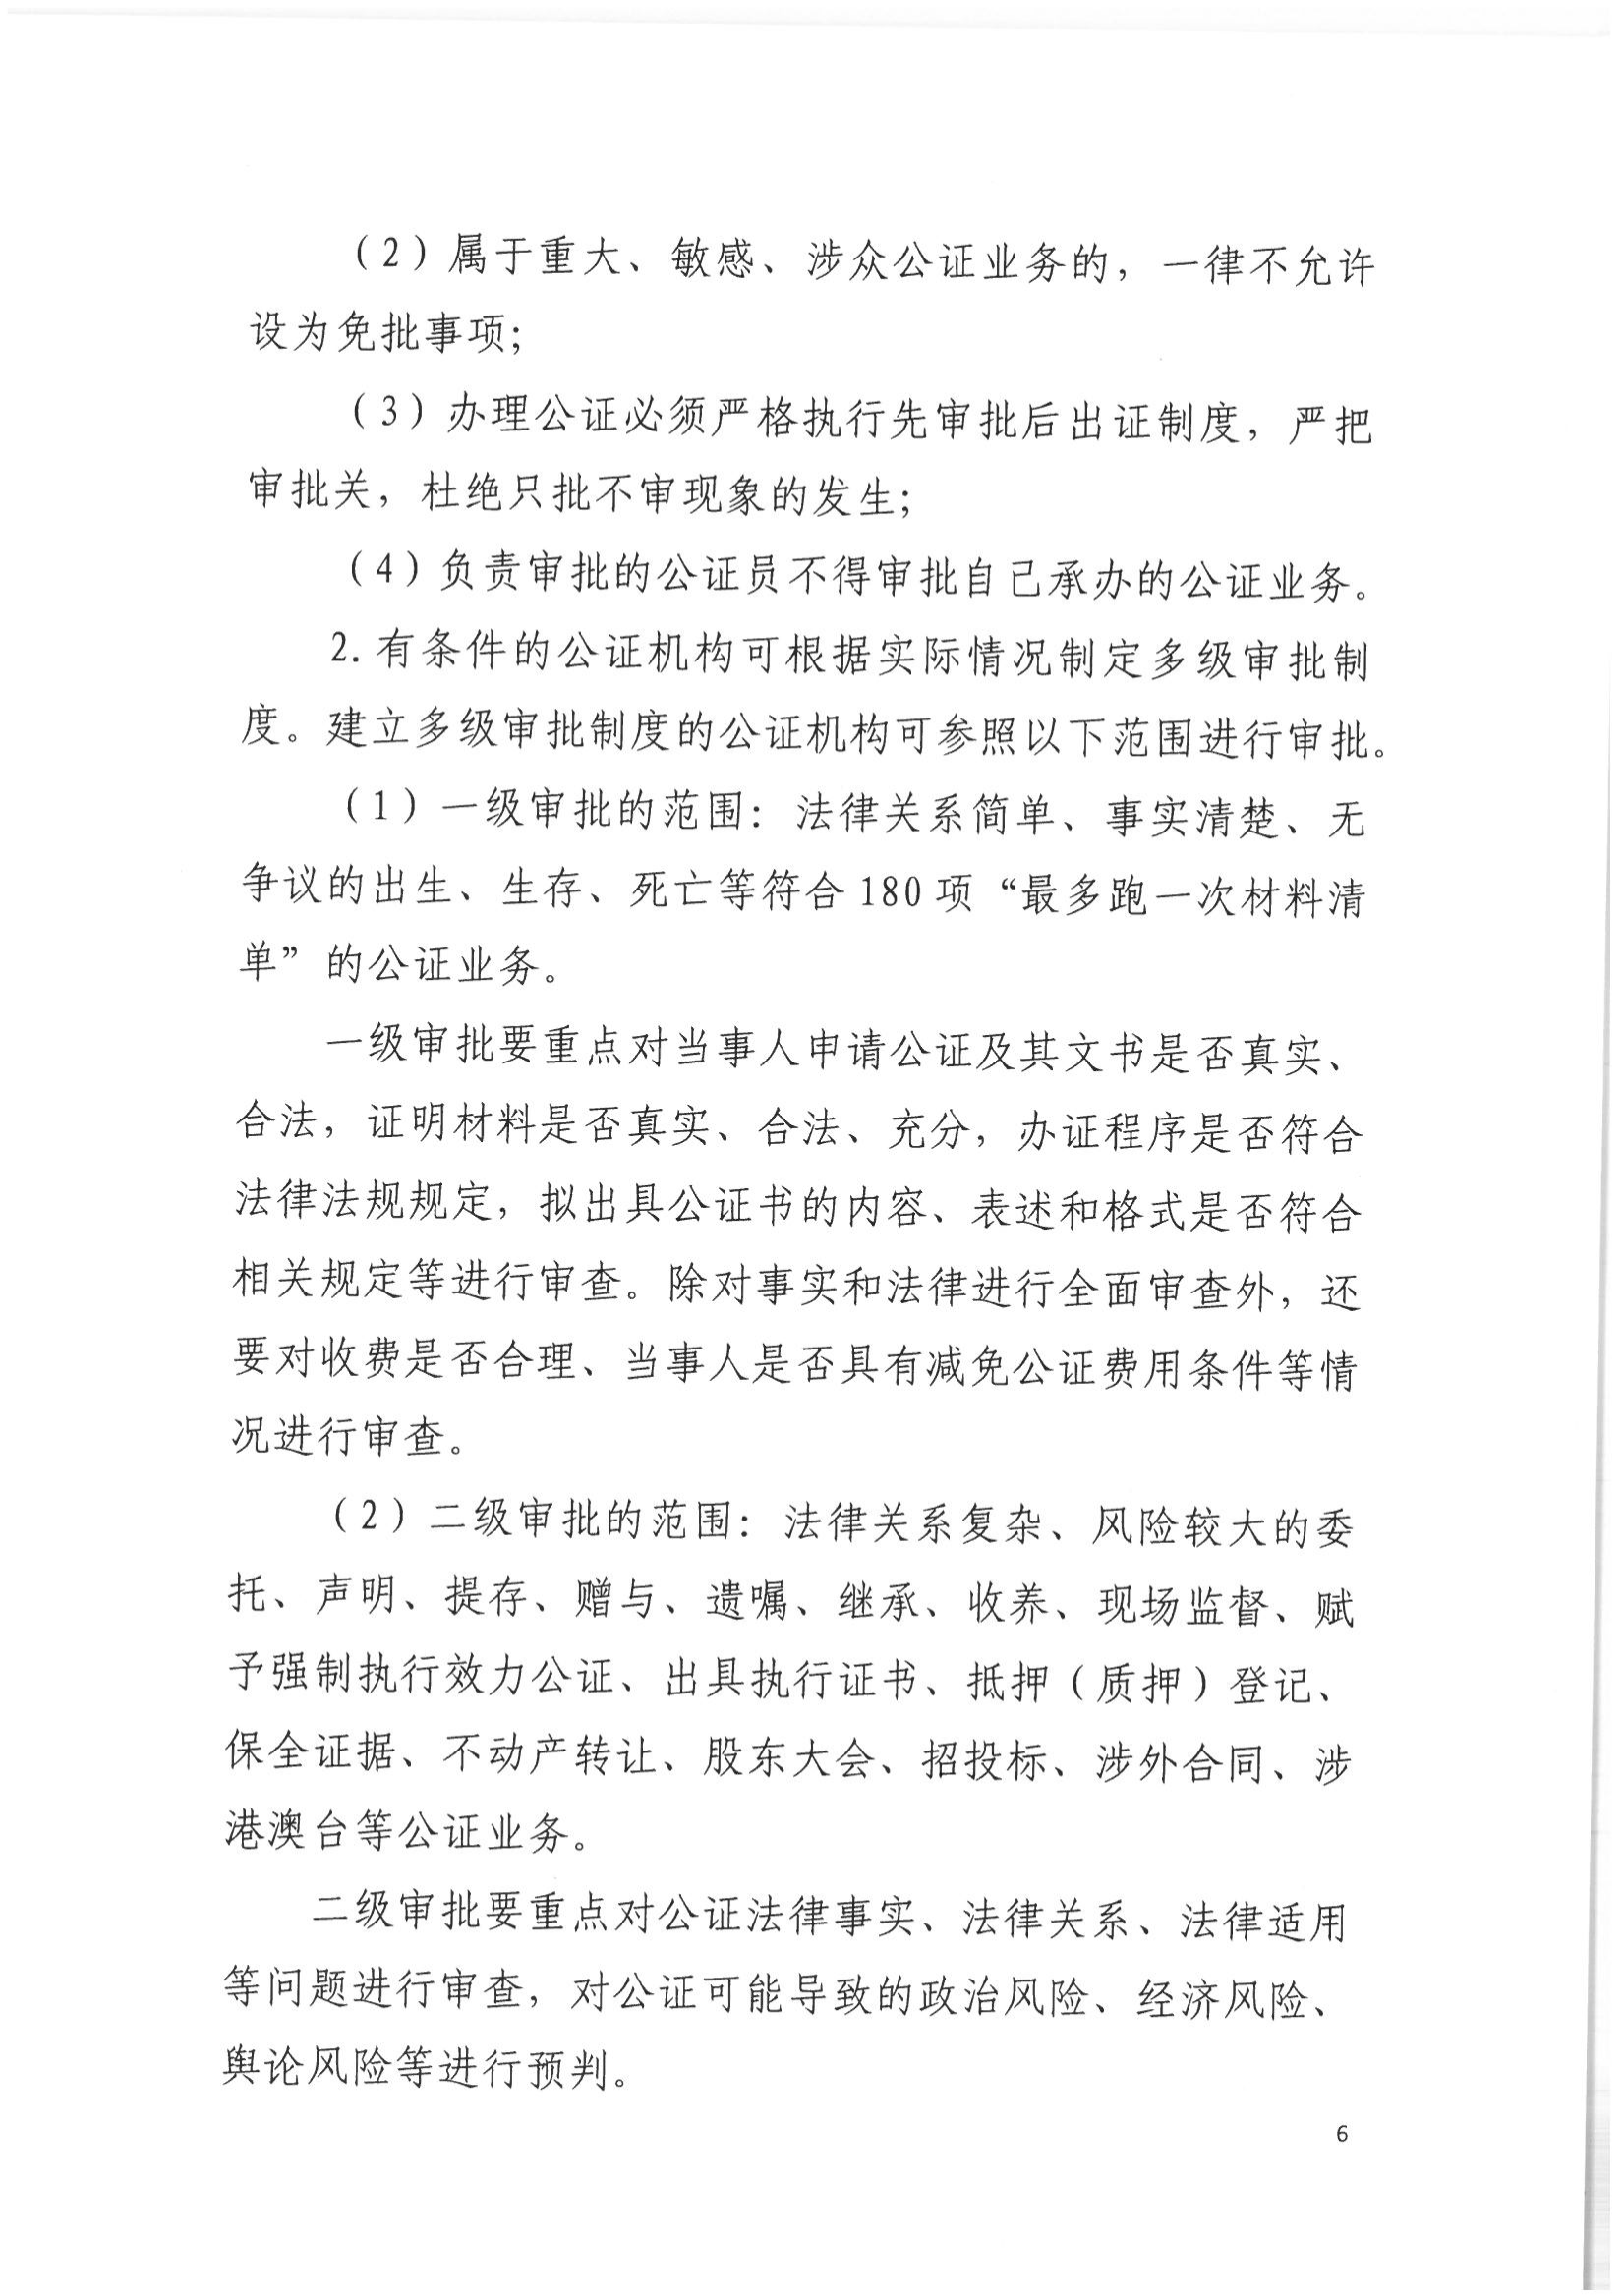 2北京市公证协会关于印发《北京市公证协会关于办理重大、敏感、涉众公证业务的工作指引》的通知(1)_05